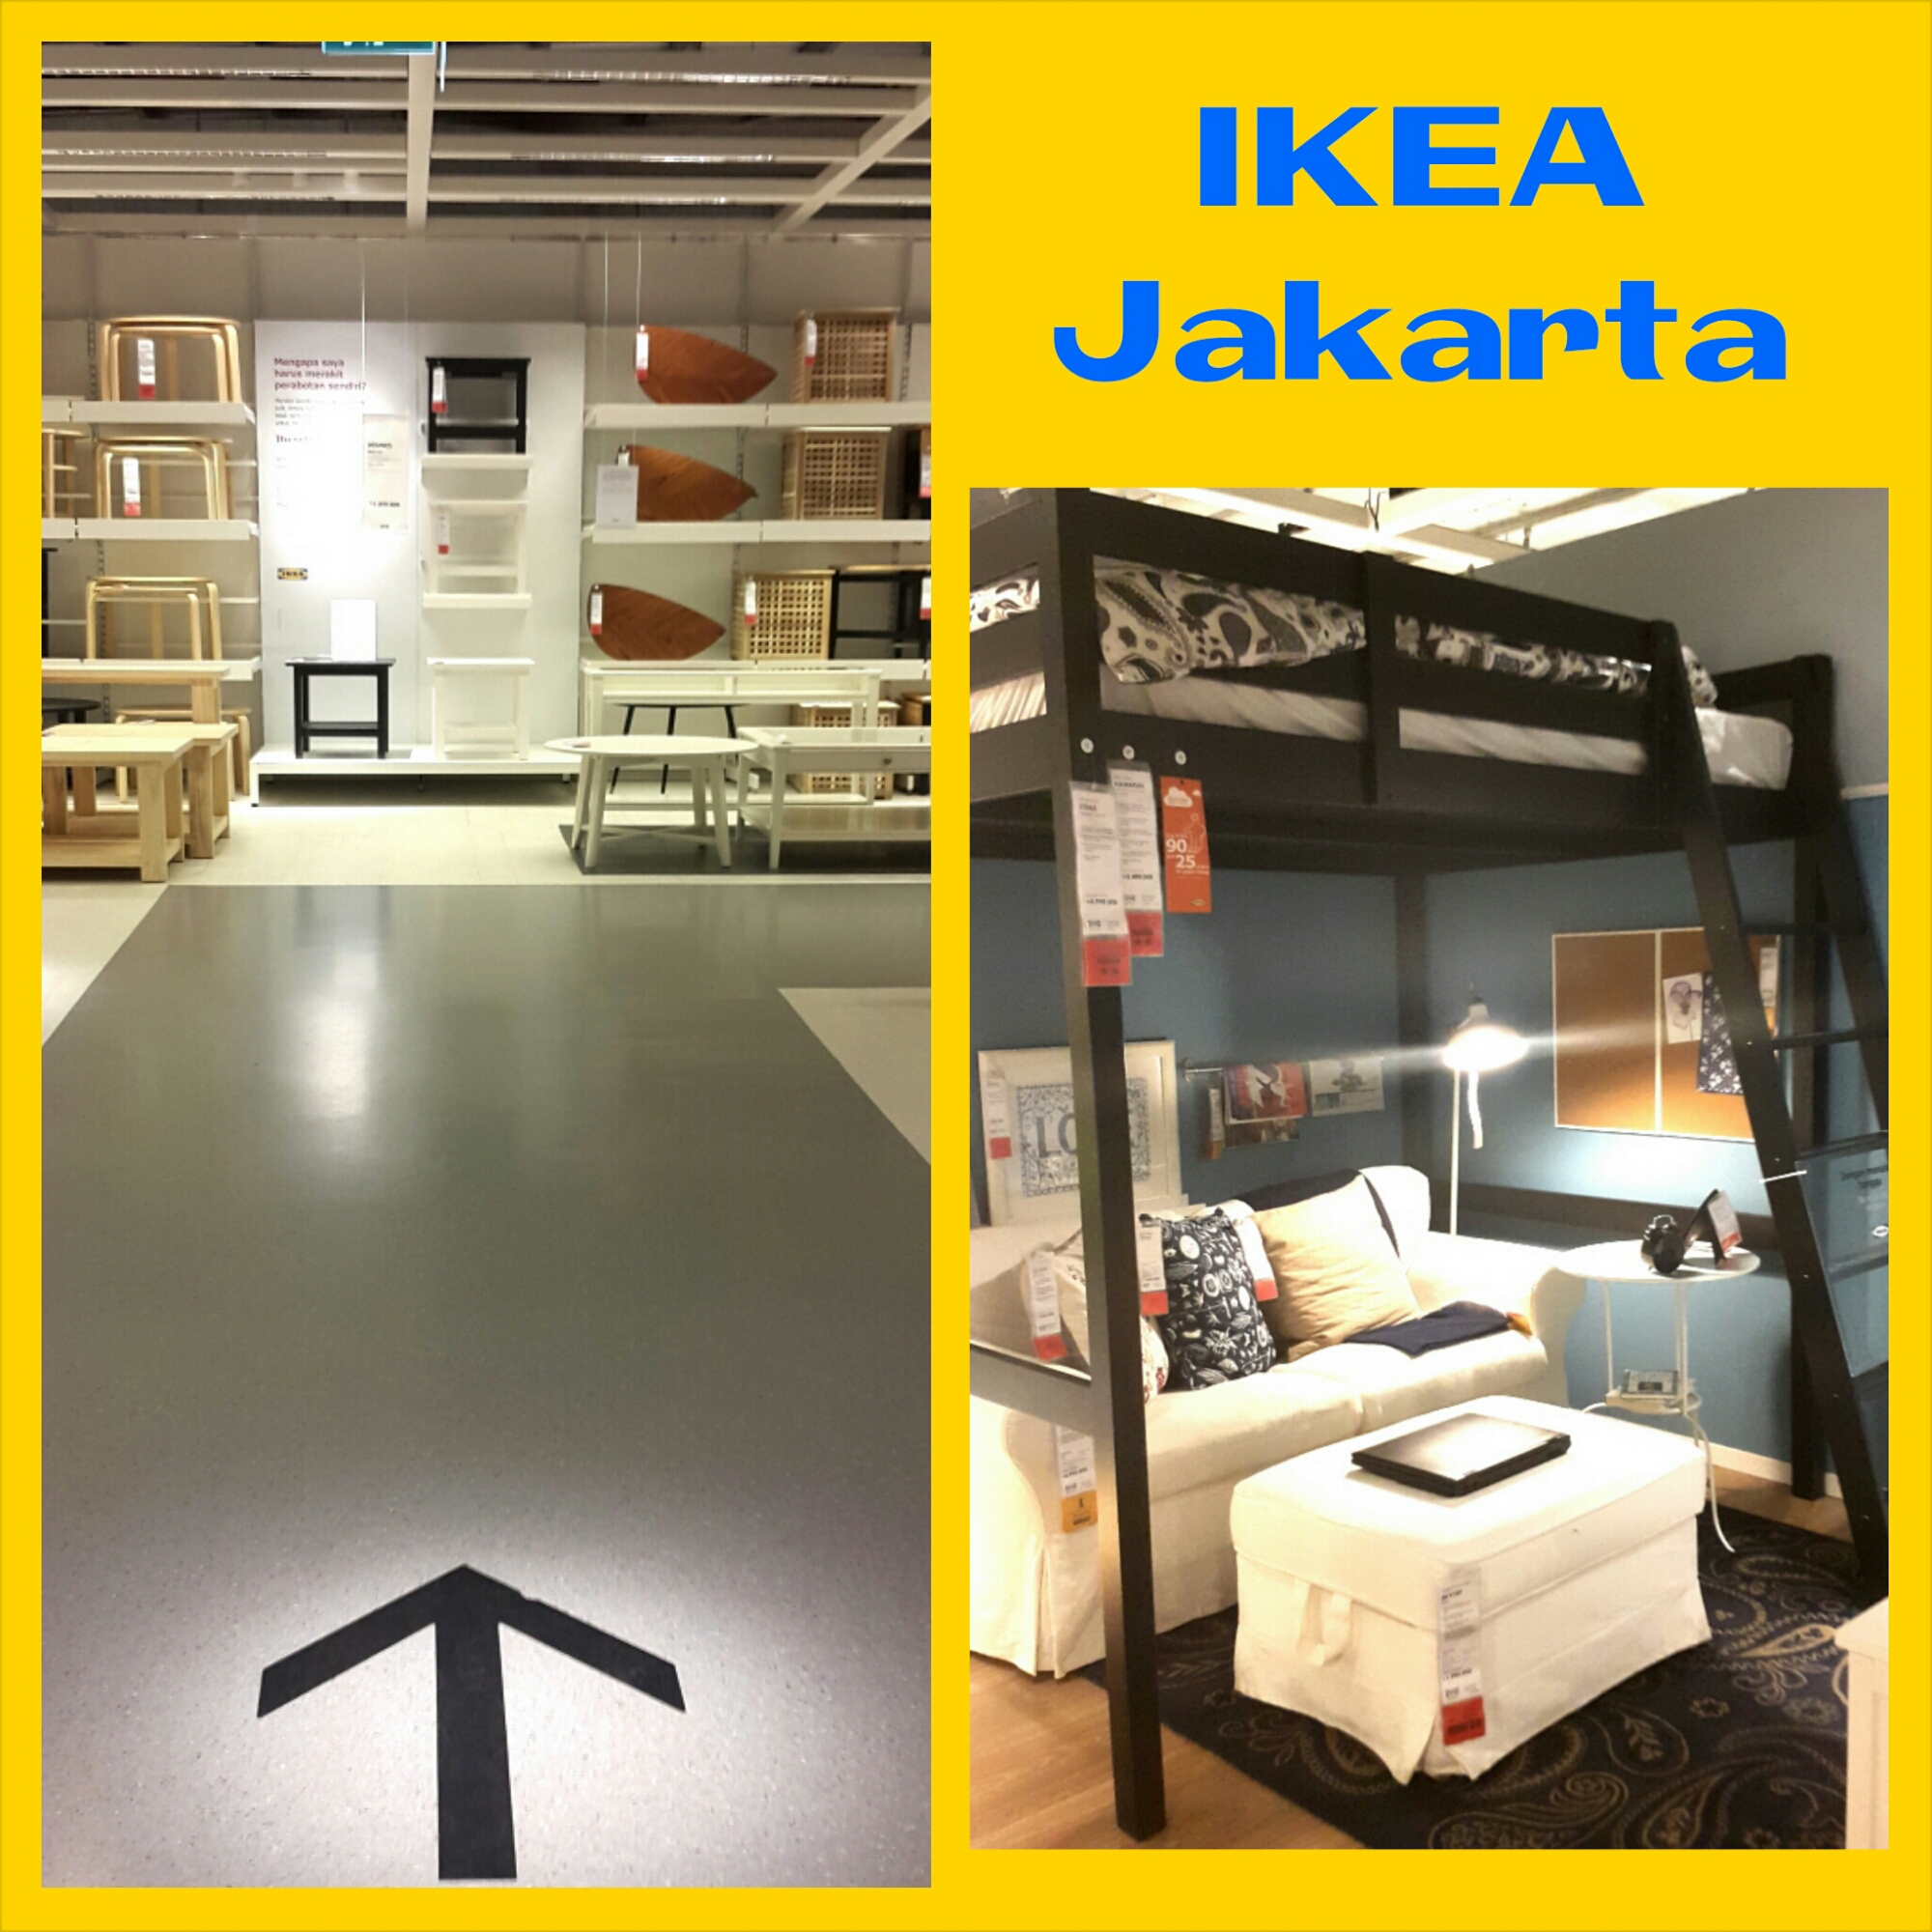 IKEA Jakarta Tempat Yang Sangat Bersahabat Untuk Anak Anak